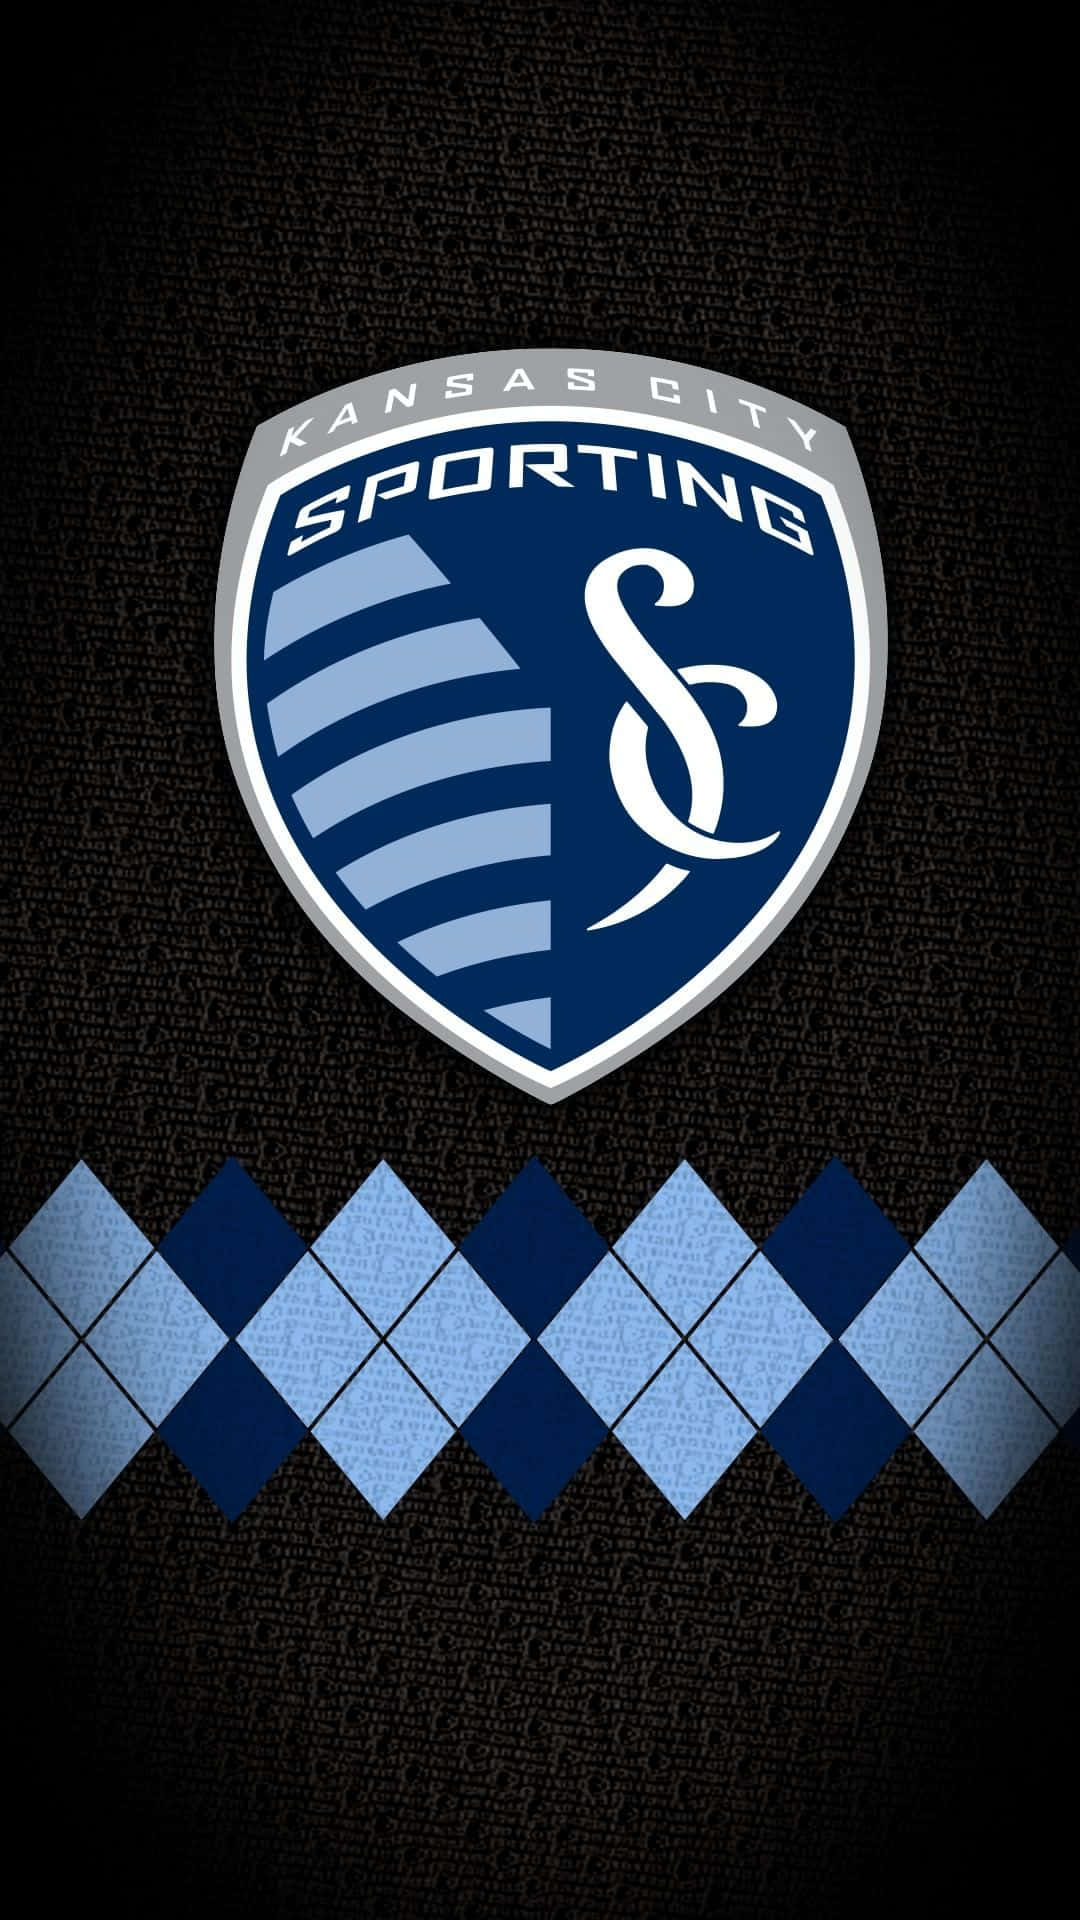 Sportingkansas City-logo Mit Argyle-muster Wallpaper